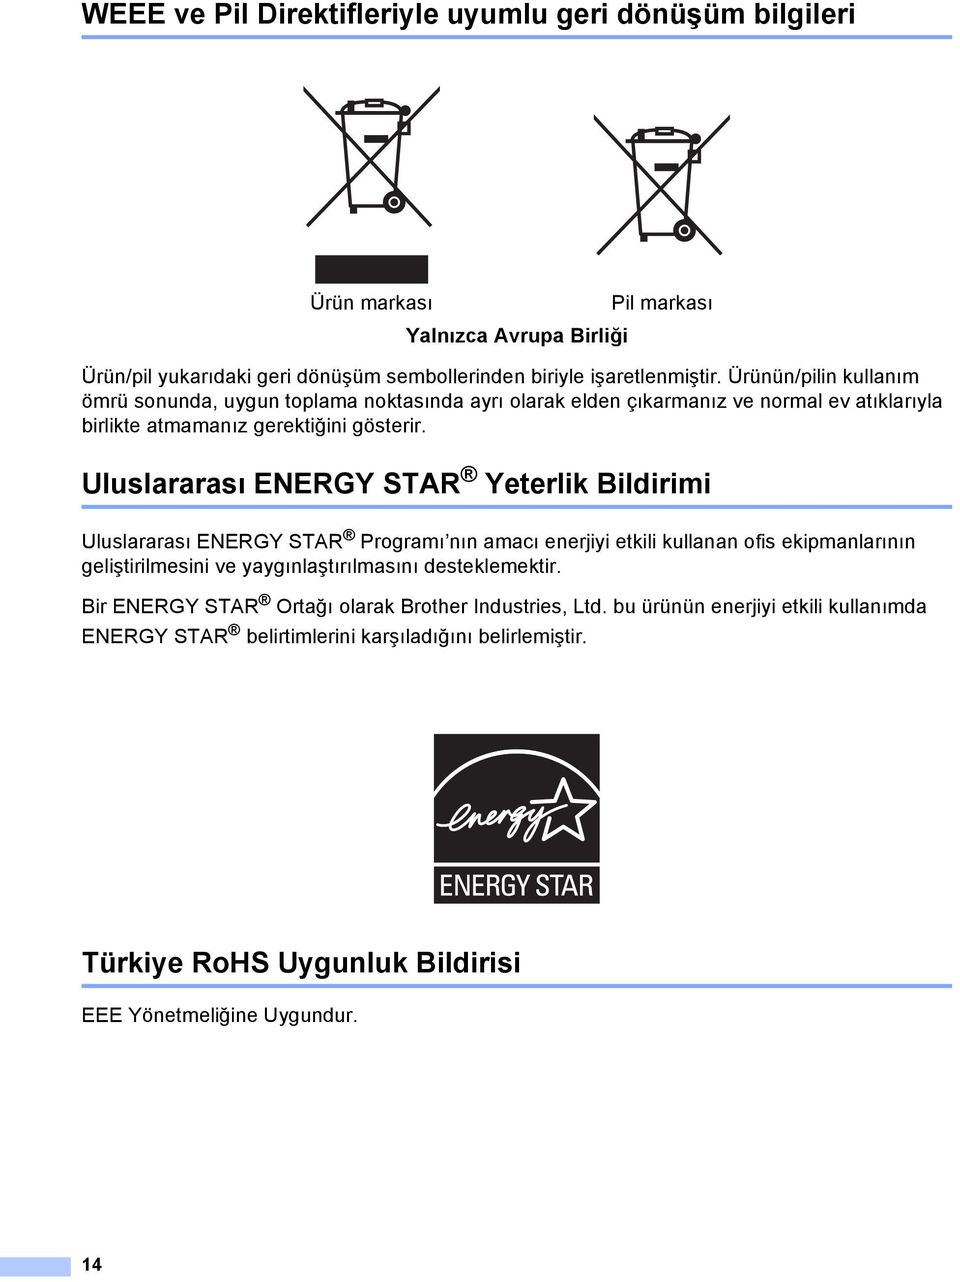 Uluslararası ENERGY STR Yeterlik Bildirimi Uluslararası ENERGY STR Programı nın amacı enerjiyi etkili kullanan ofis ekipmanlarının geliştirilmesini ve yaygınlaştırılmasını